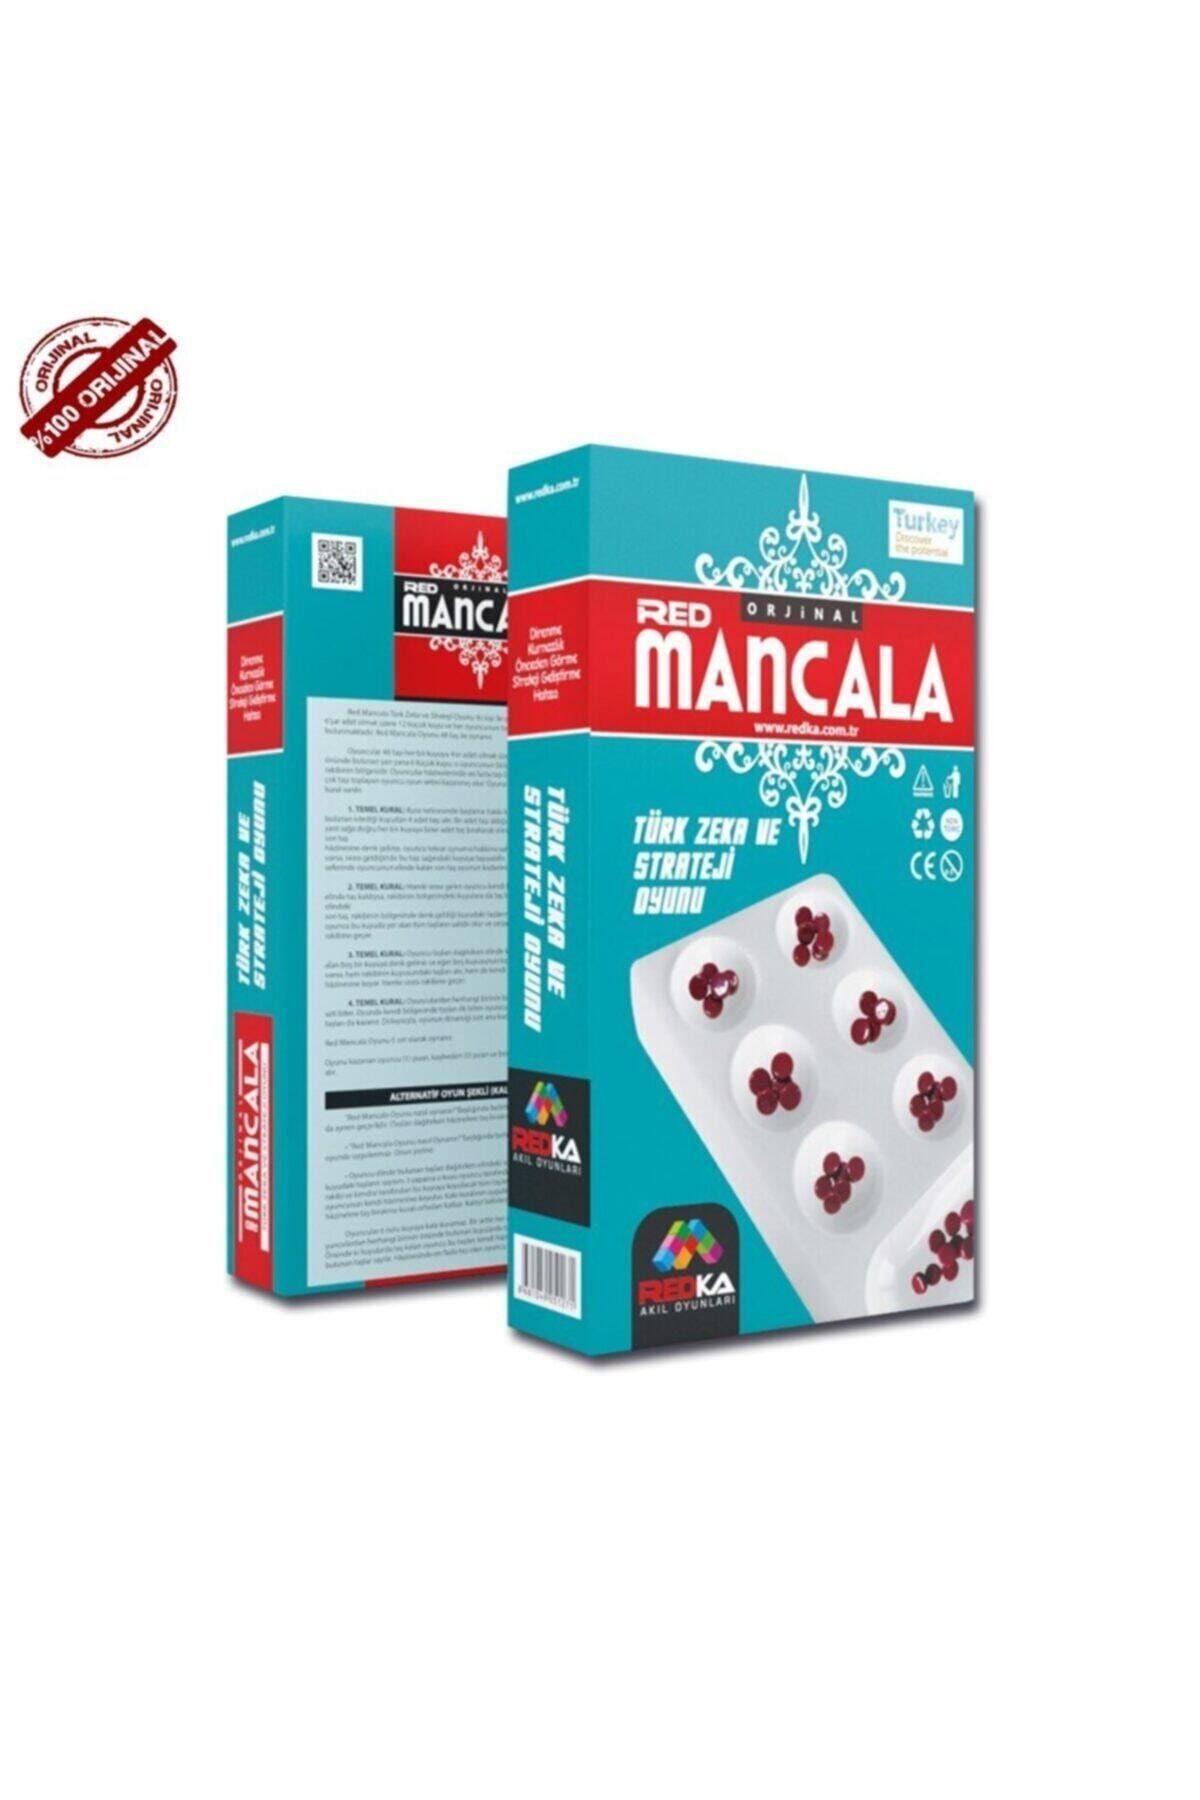 Redka Kapalı Plastik Mancala Mangala Oyunu Türk Zeka Ve Strateji Oyunu